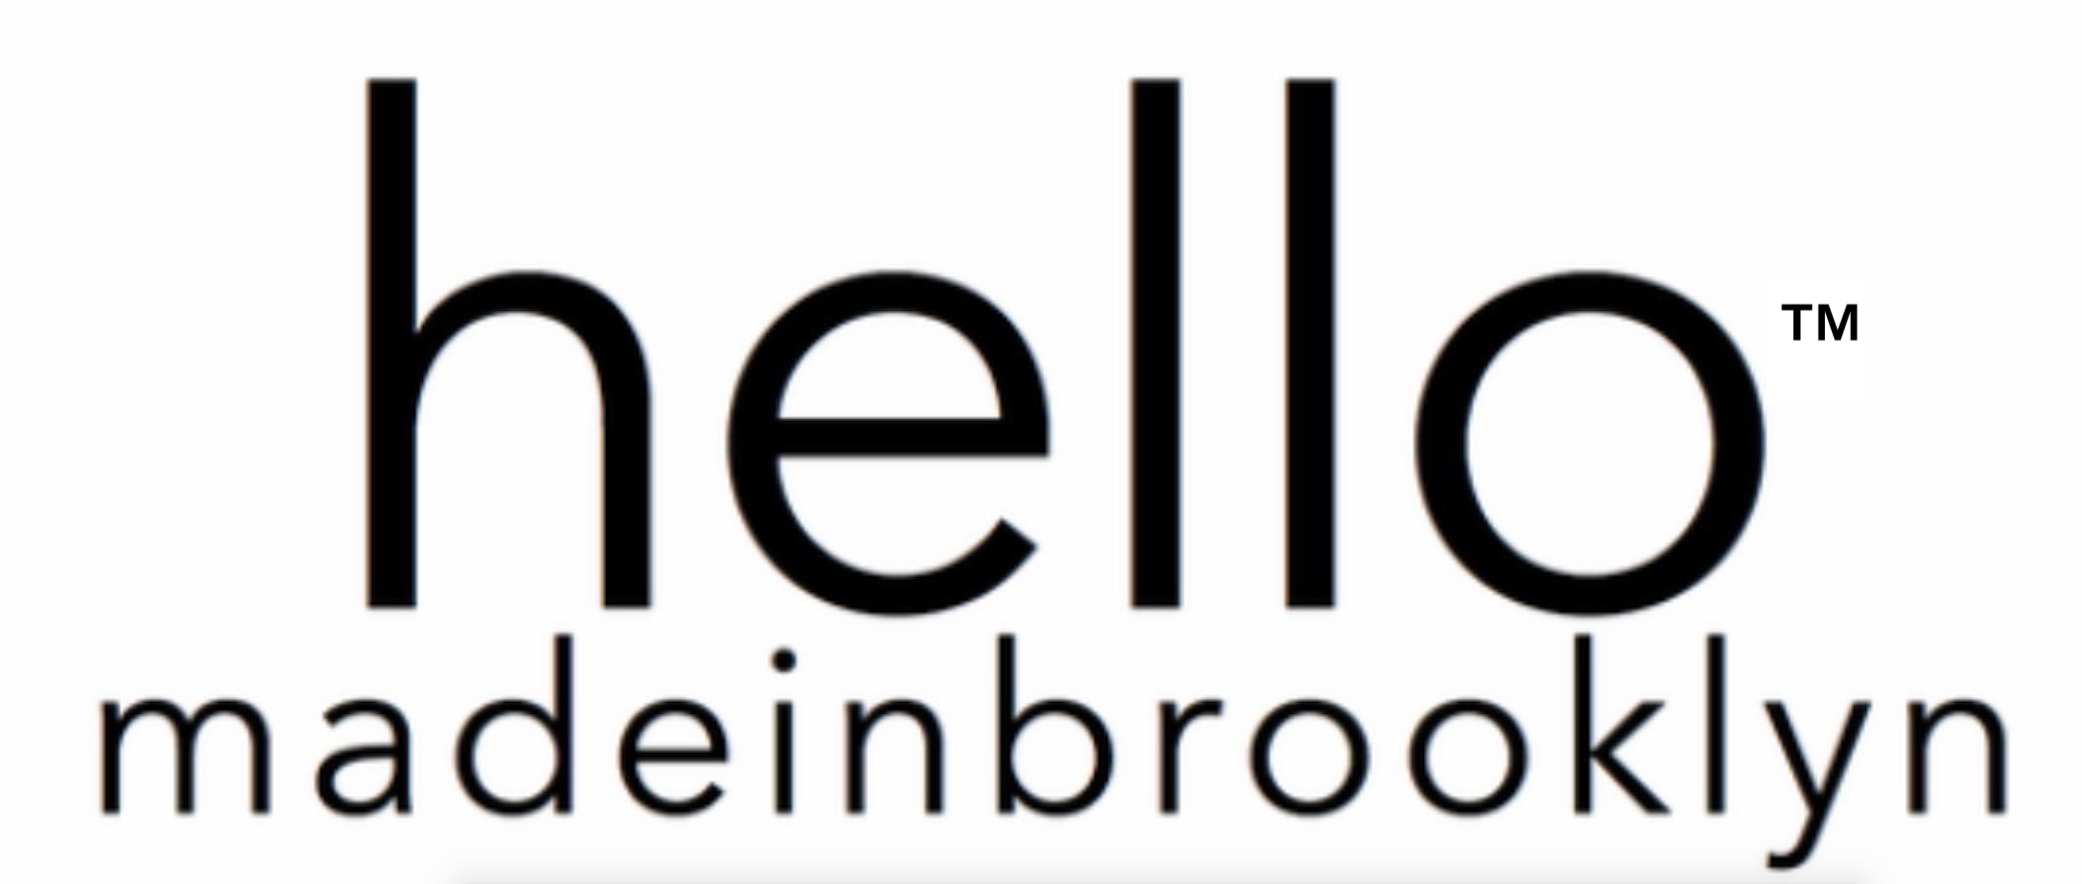 hello made in brooklyn™+2022+hello+made+in+brooklyn™+Logo+™+%229™ hellomadeinbrooklyn%22-1.png+hello+made+in+brooklyn+™+brand+brooklyn+brand+hello+made+in+brooklyn+™+products+company HELLO MADE IN BROOKLYN™ STORE.png